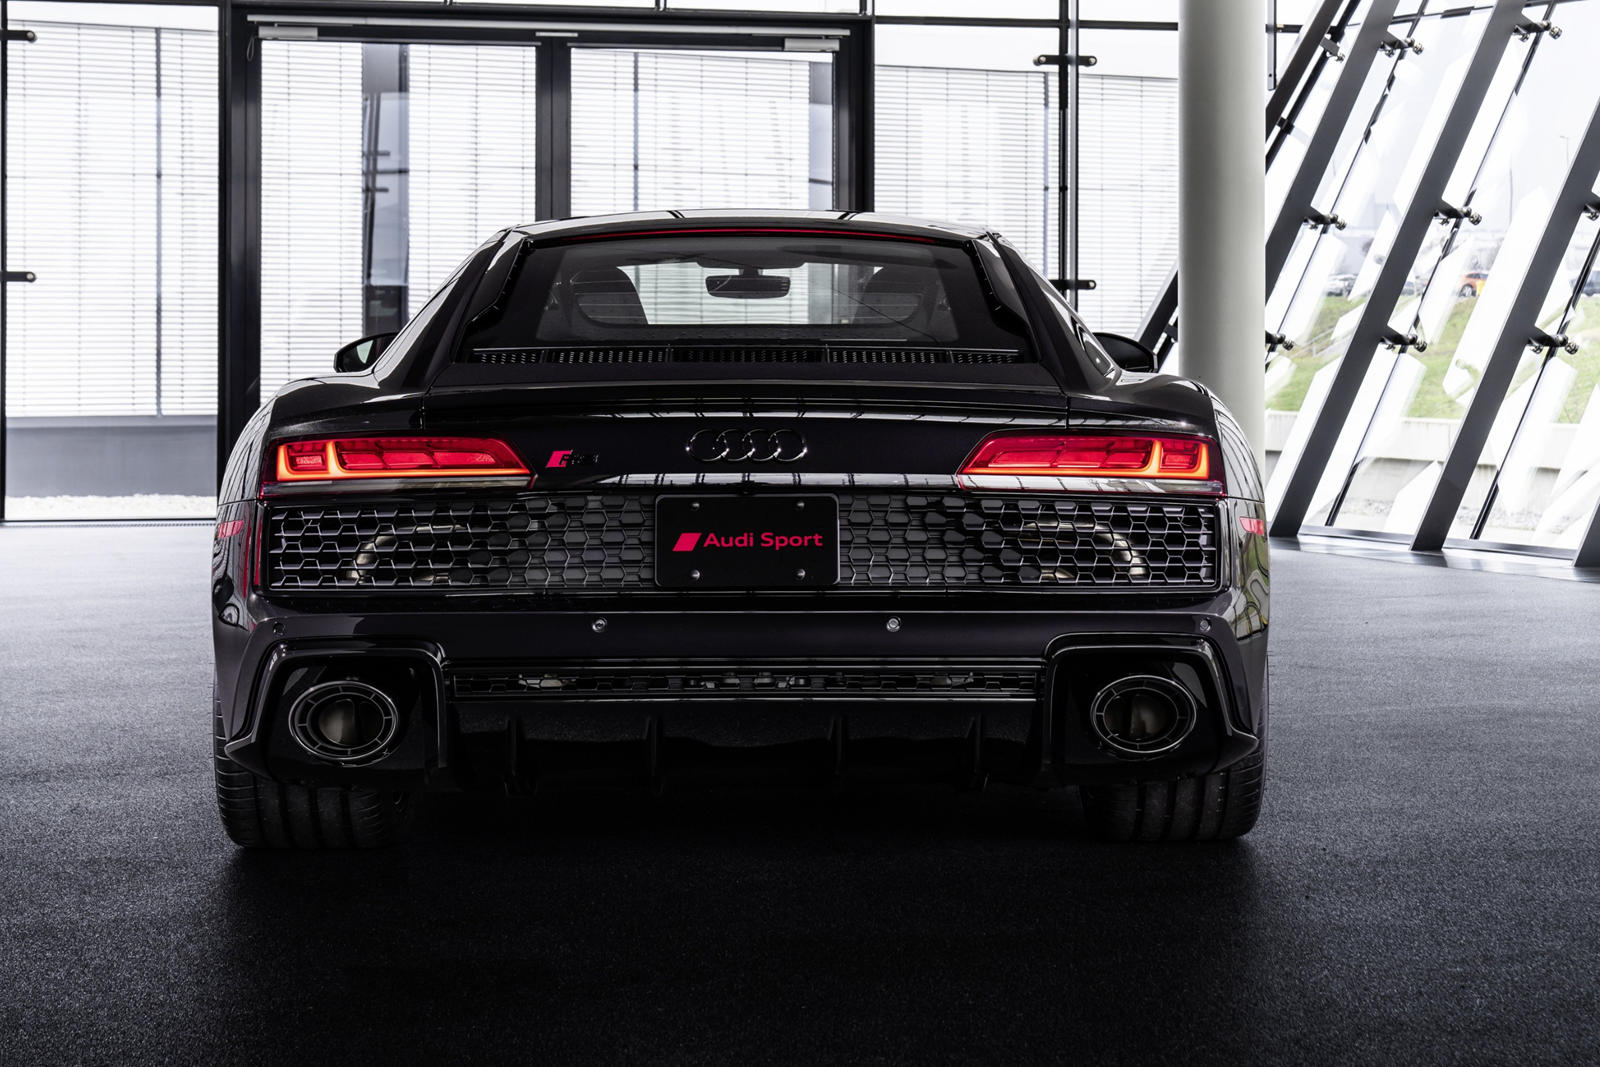 R8 присоединяется к выпуску RS5 Panther 2019 года, который был ограничен всего 100 экземплярами в США и включал ту же окраску с эффектом кристаллов Panther Black и красный интерьер. Audi заявляет, что только избранные дилеры будут получать R8 Panther